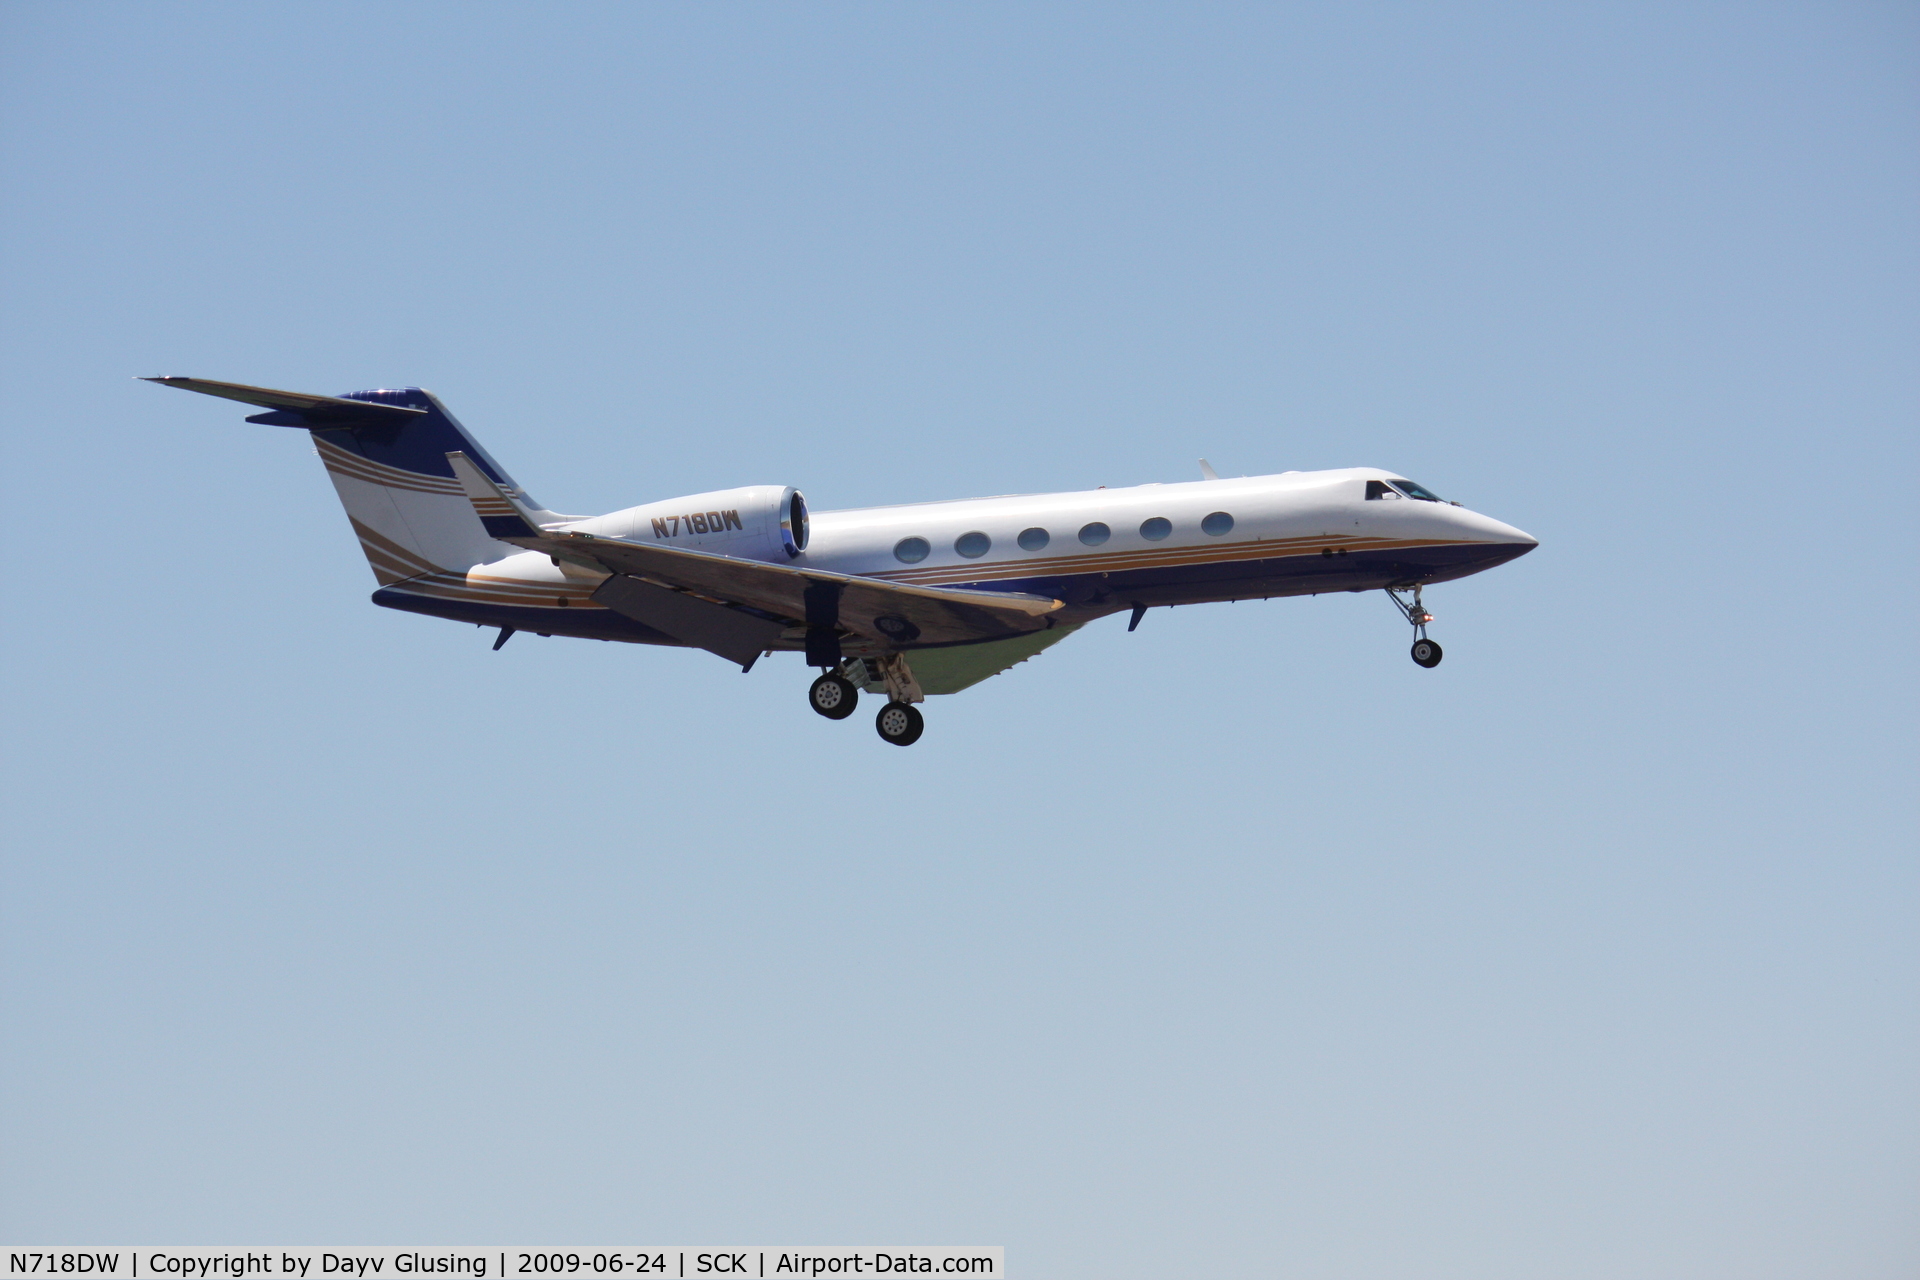 N718DW, 2001 Gulfstream Aerospace G-IV C/N 1442, On Final